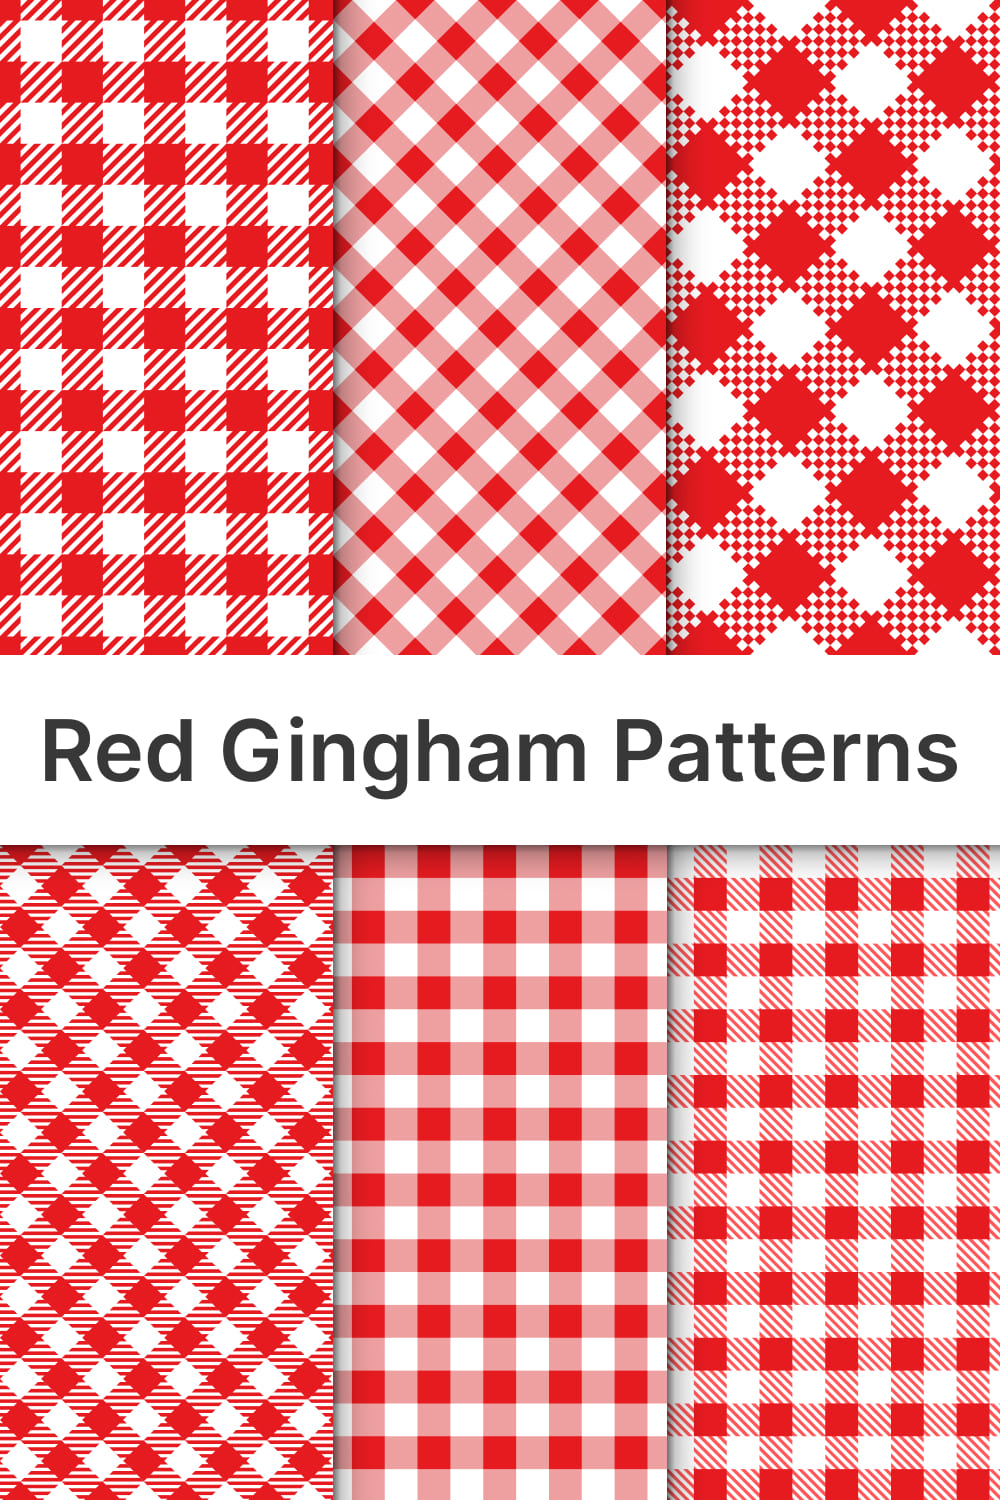 Red gingham looks like a grandma print.